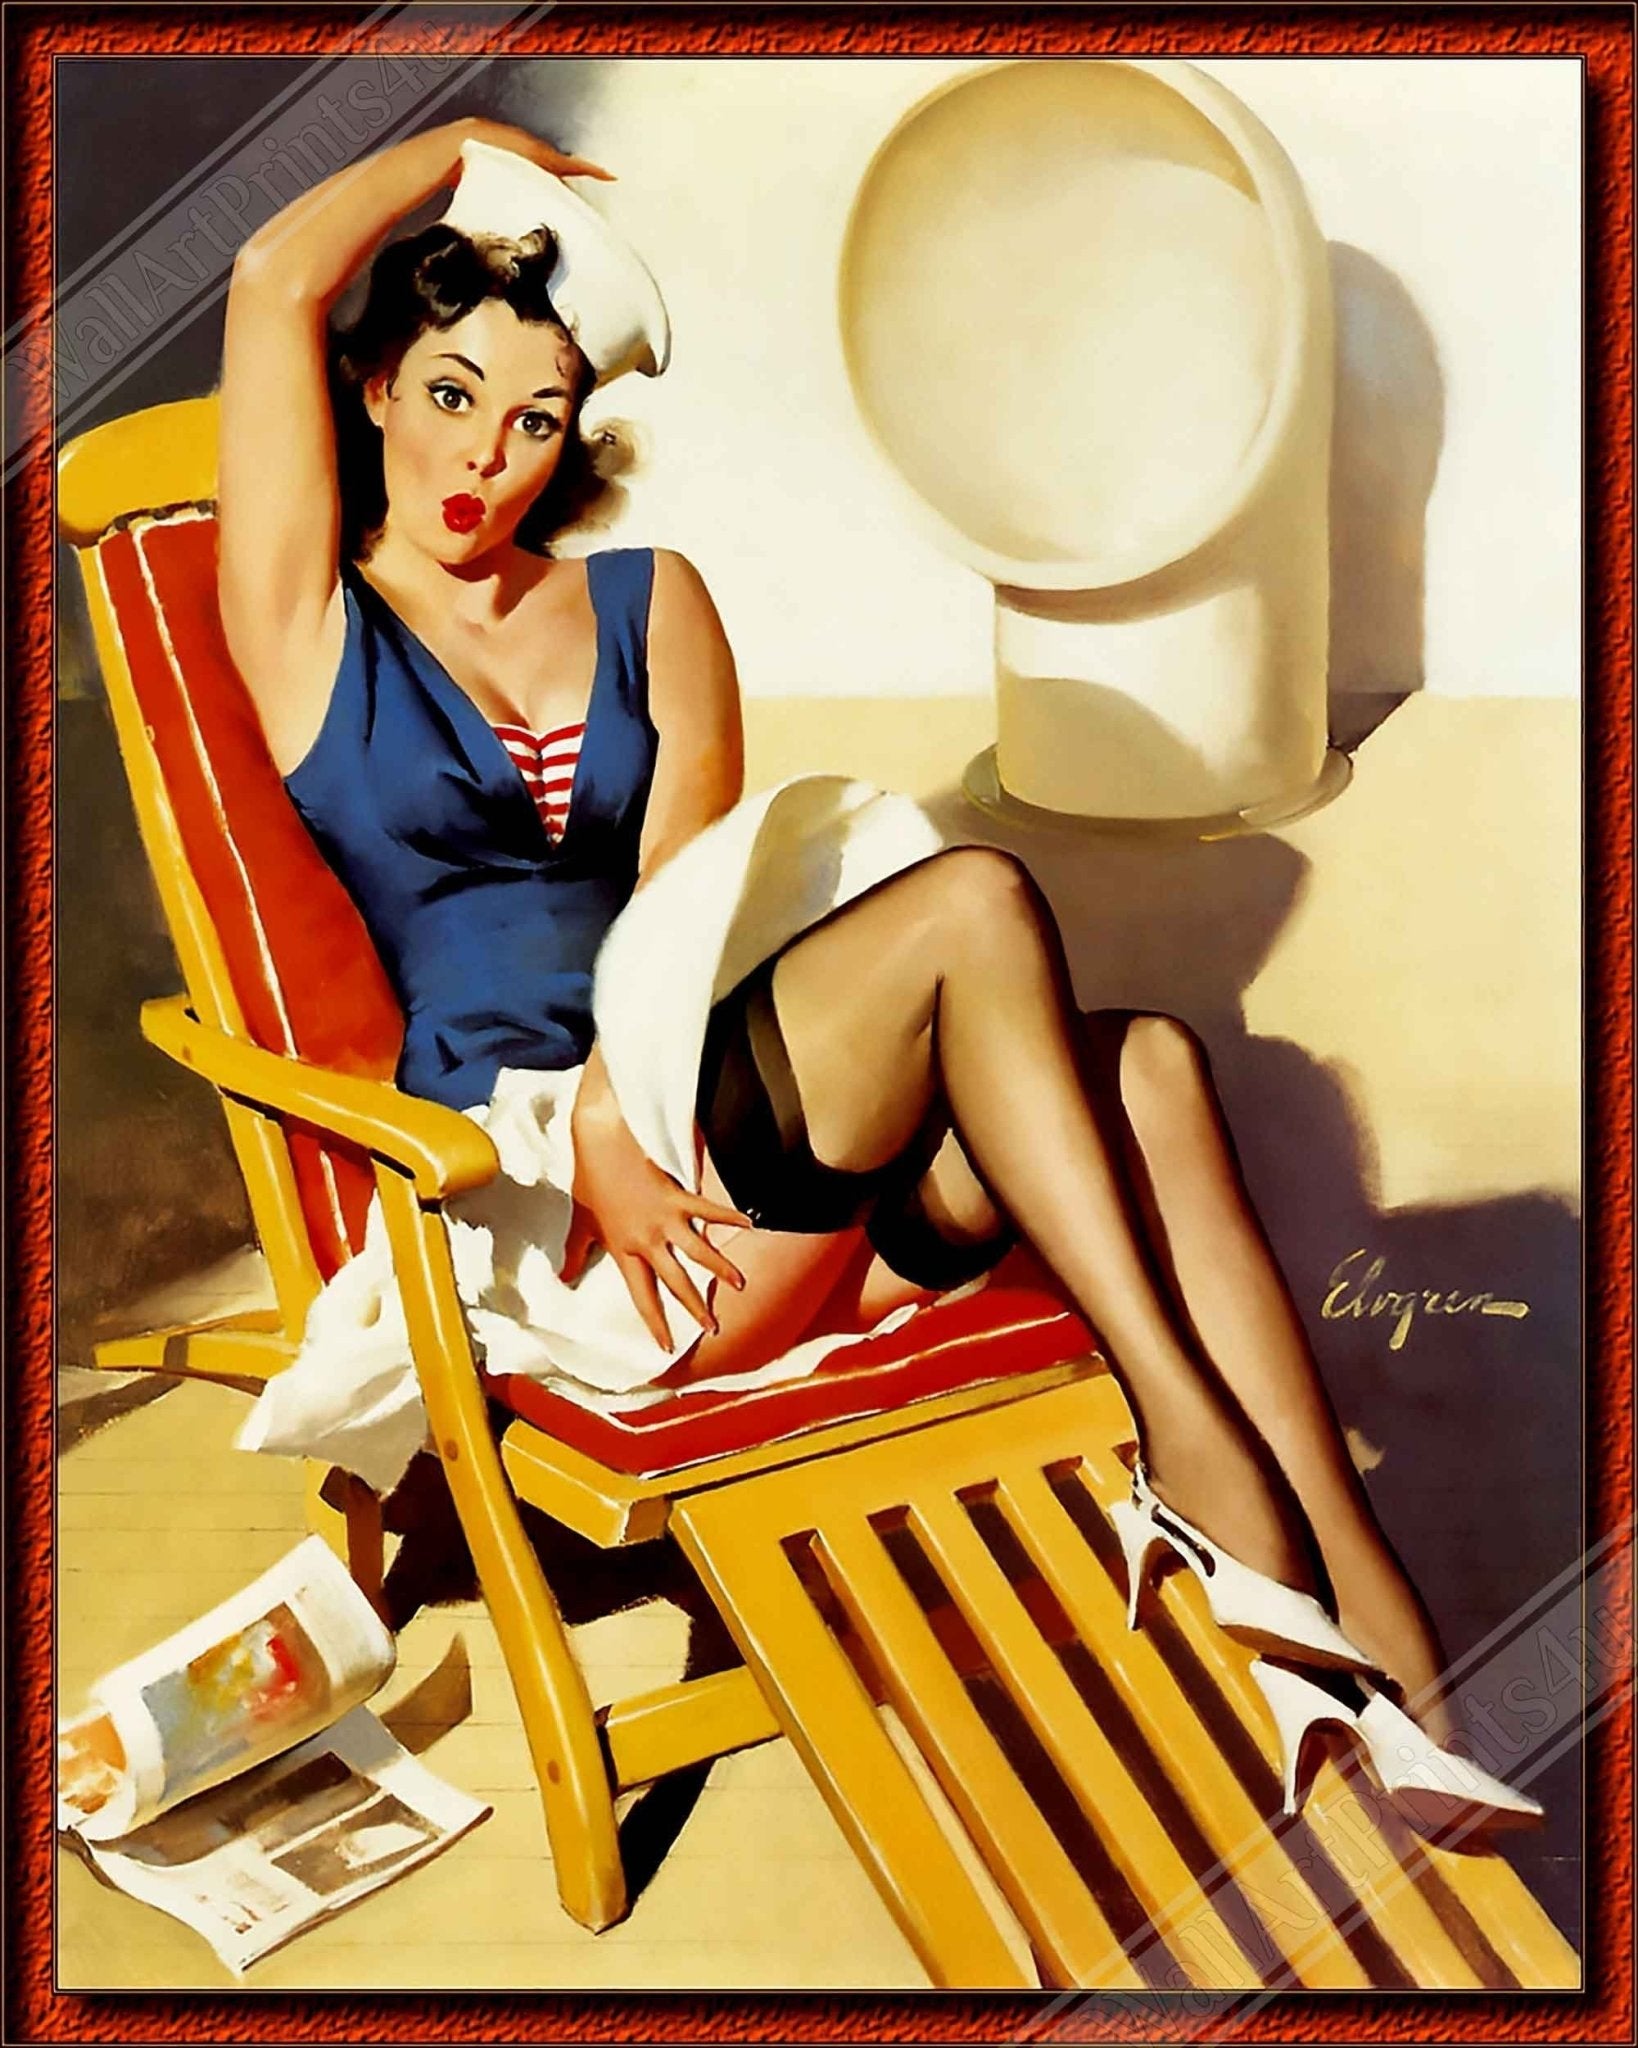 Pin Up Framed, Gil Elvgren, Deck Chair Pin Up - Vintage Art - Retro Pin Up Girl Framed Print - Late 1940'S - 1950'S - WallArtPrints4U